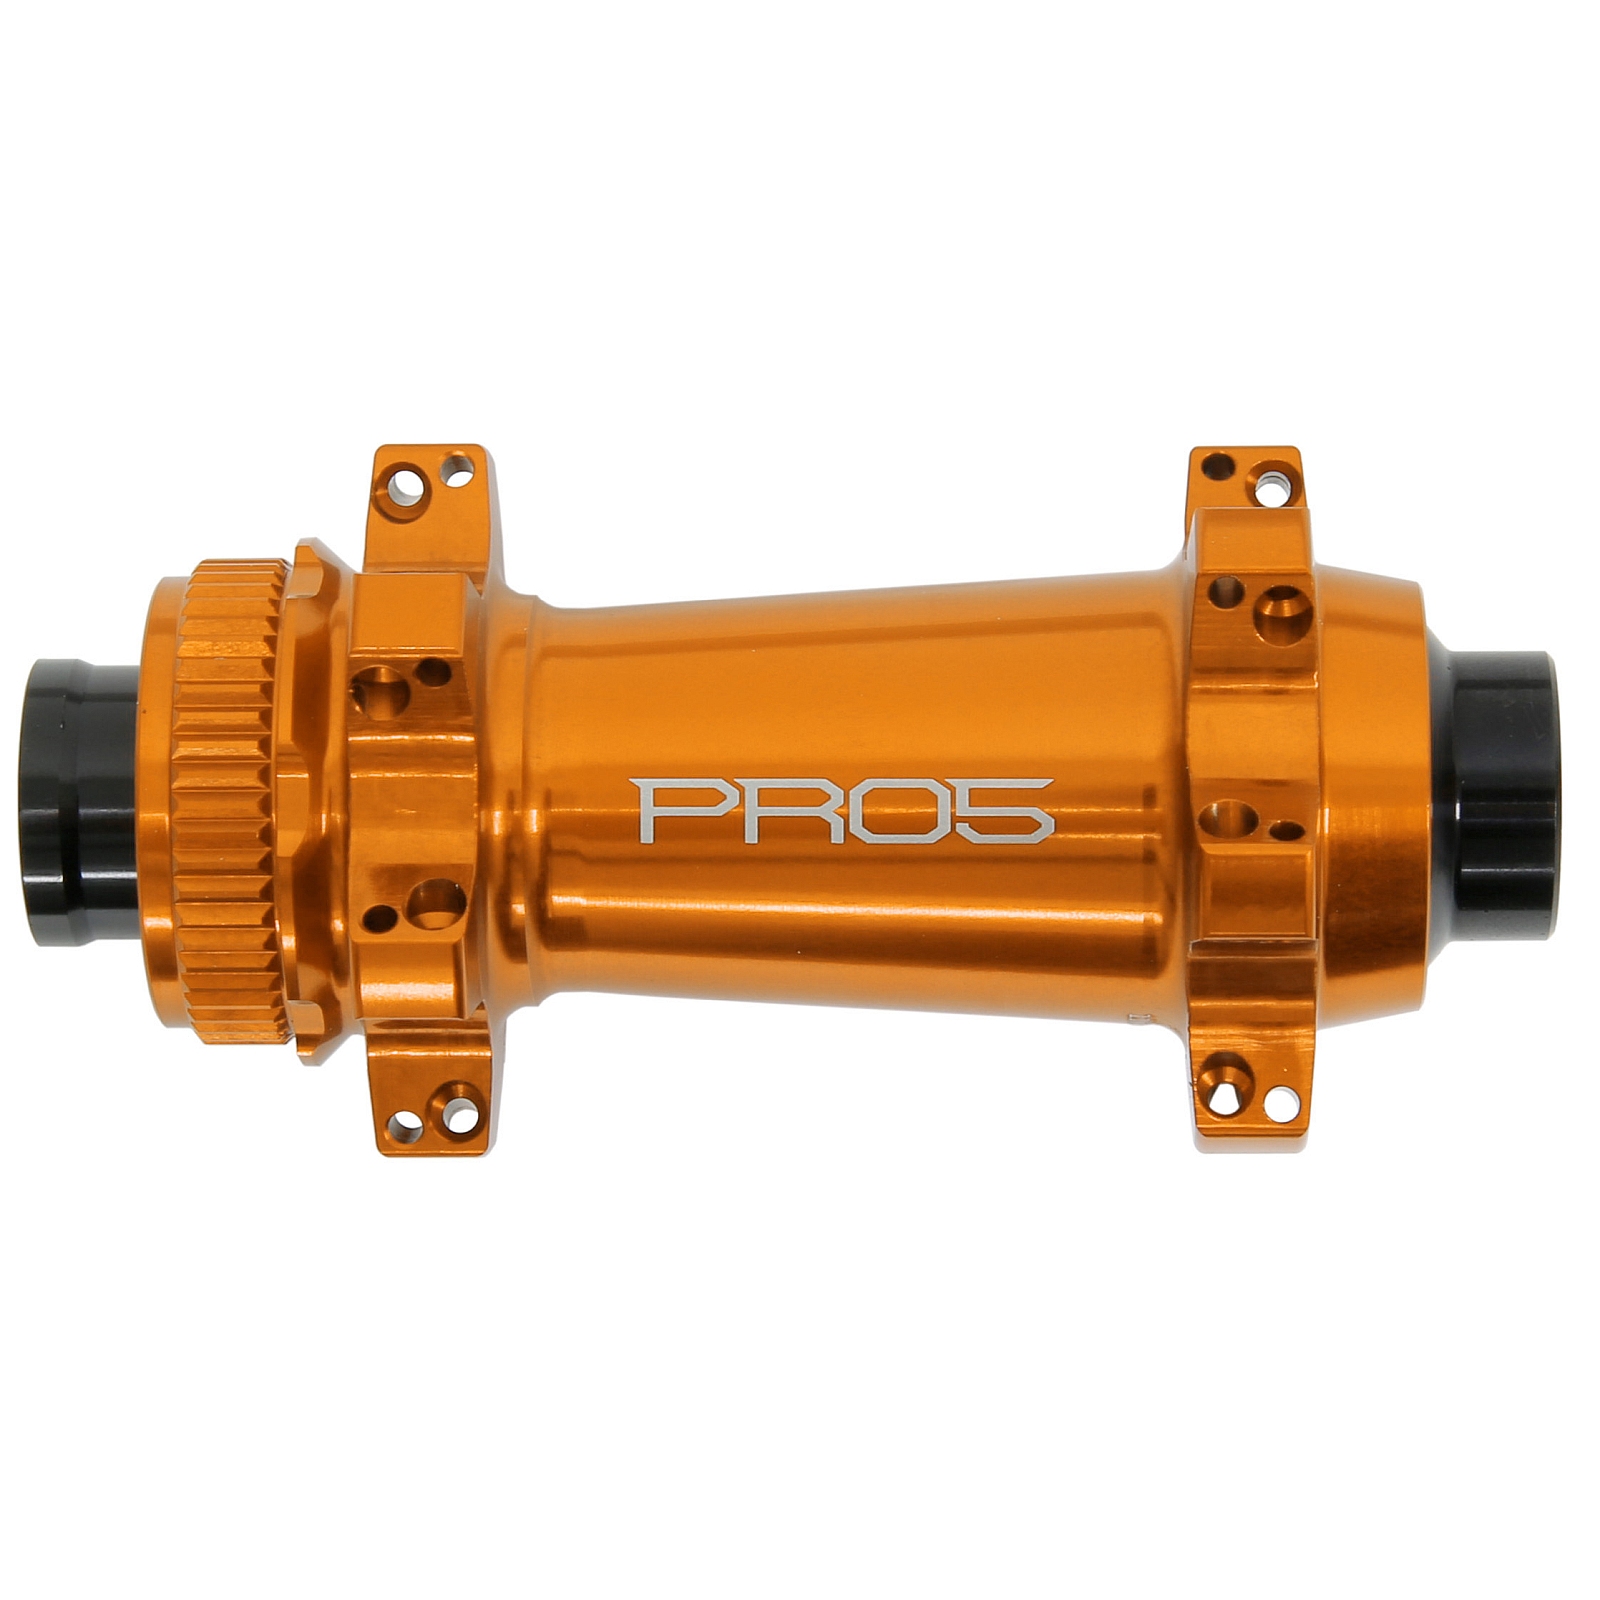 Produktbild von Hope Pro 5 Straightpull Vorderradnabe - Centerlock - 15x110mm Boost - orange